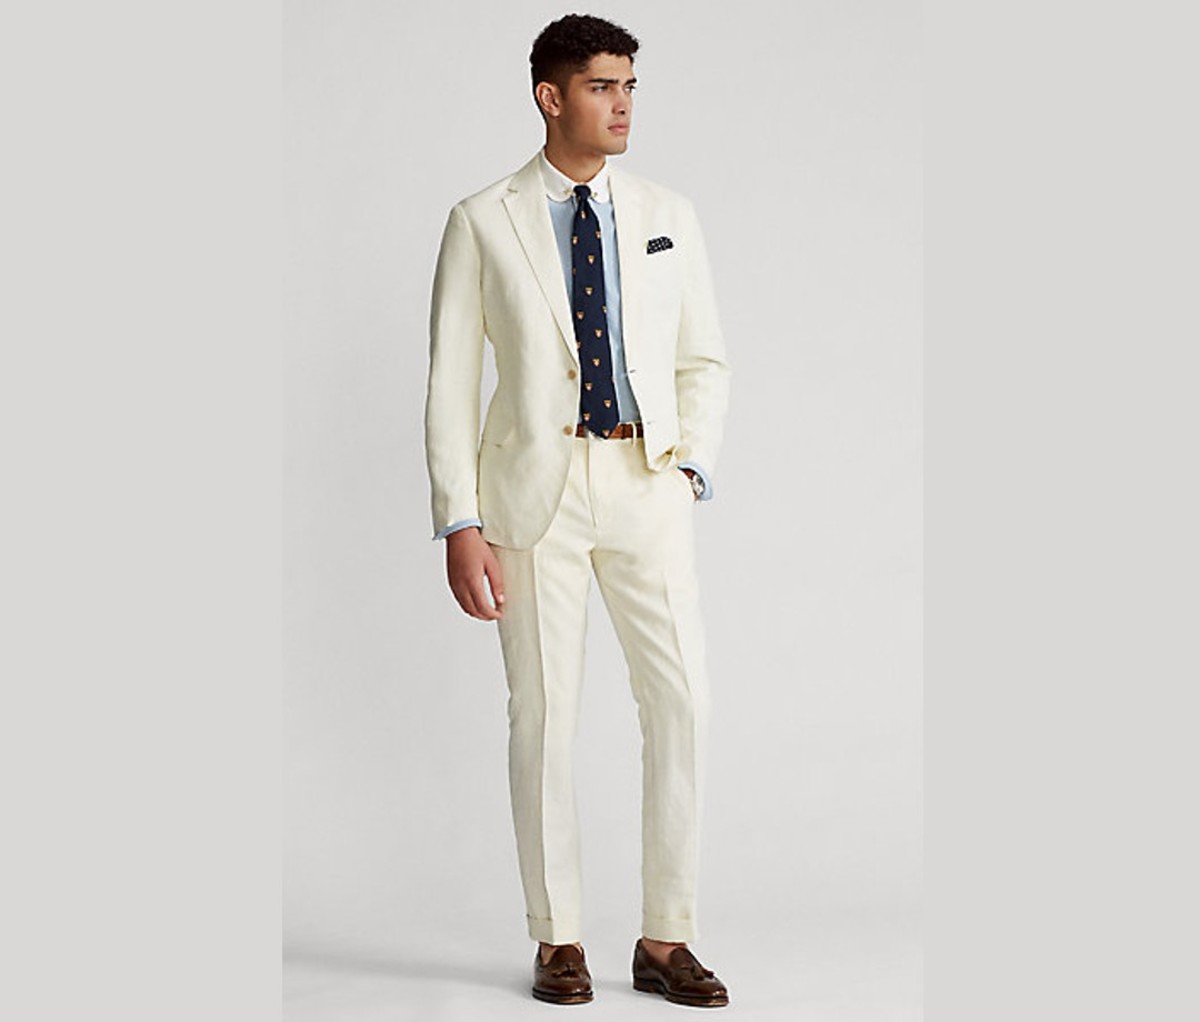 Polo Ralph Lauren â€” Soft Slub Linen Polo Suit Jacket and Soft Slub Linen Polo Suit Pants